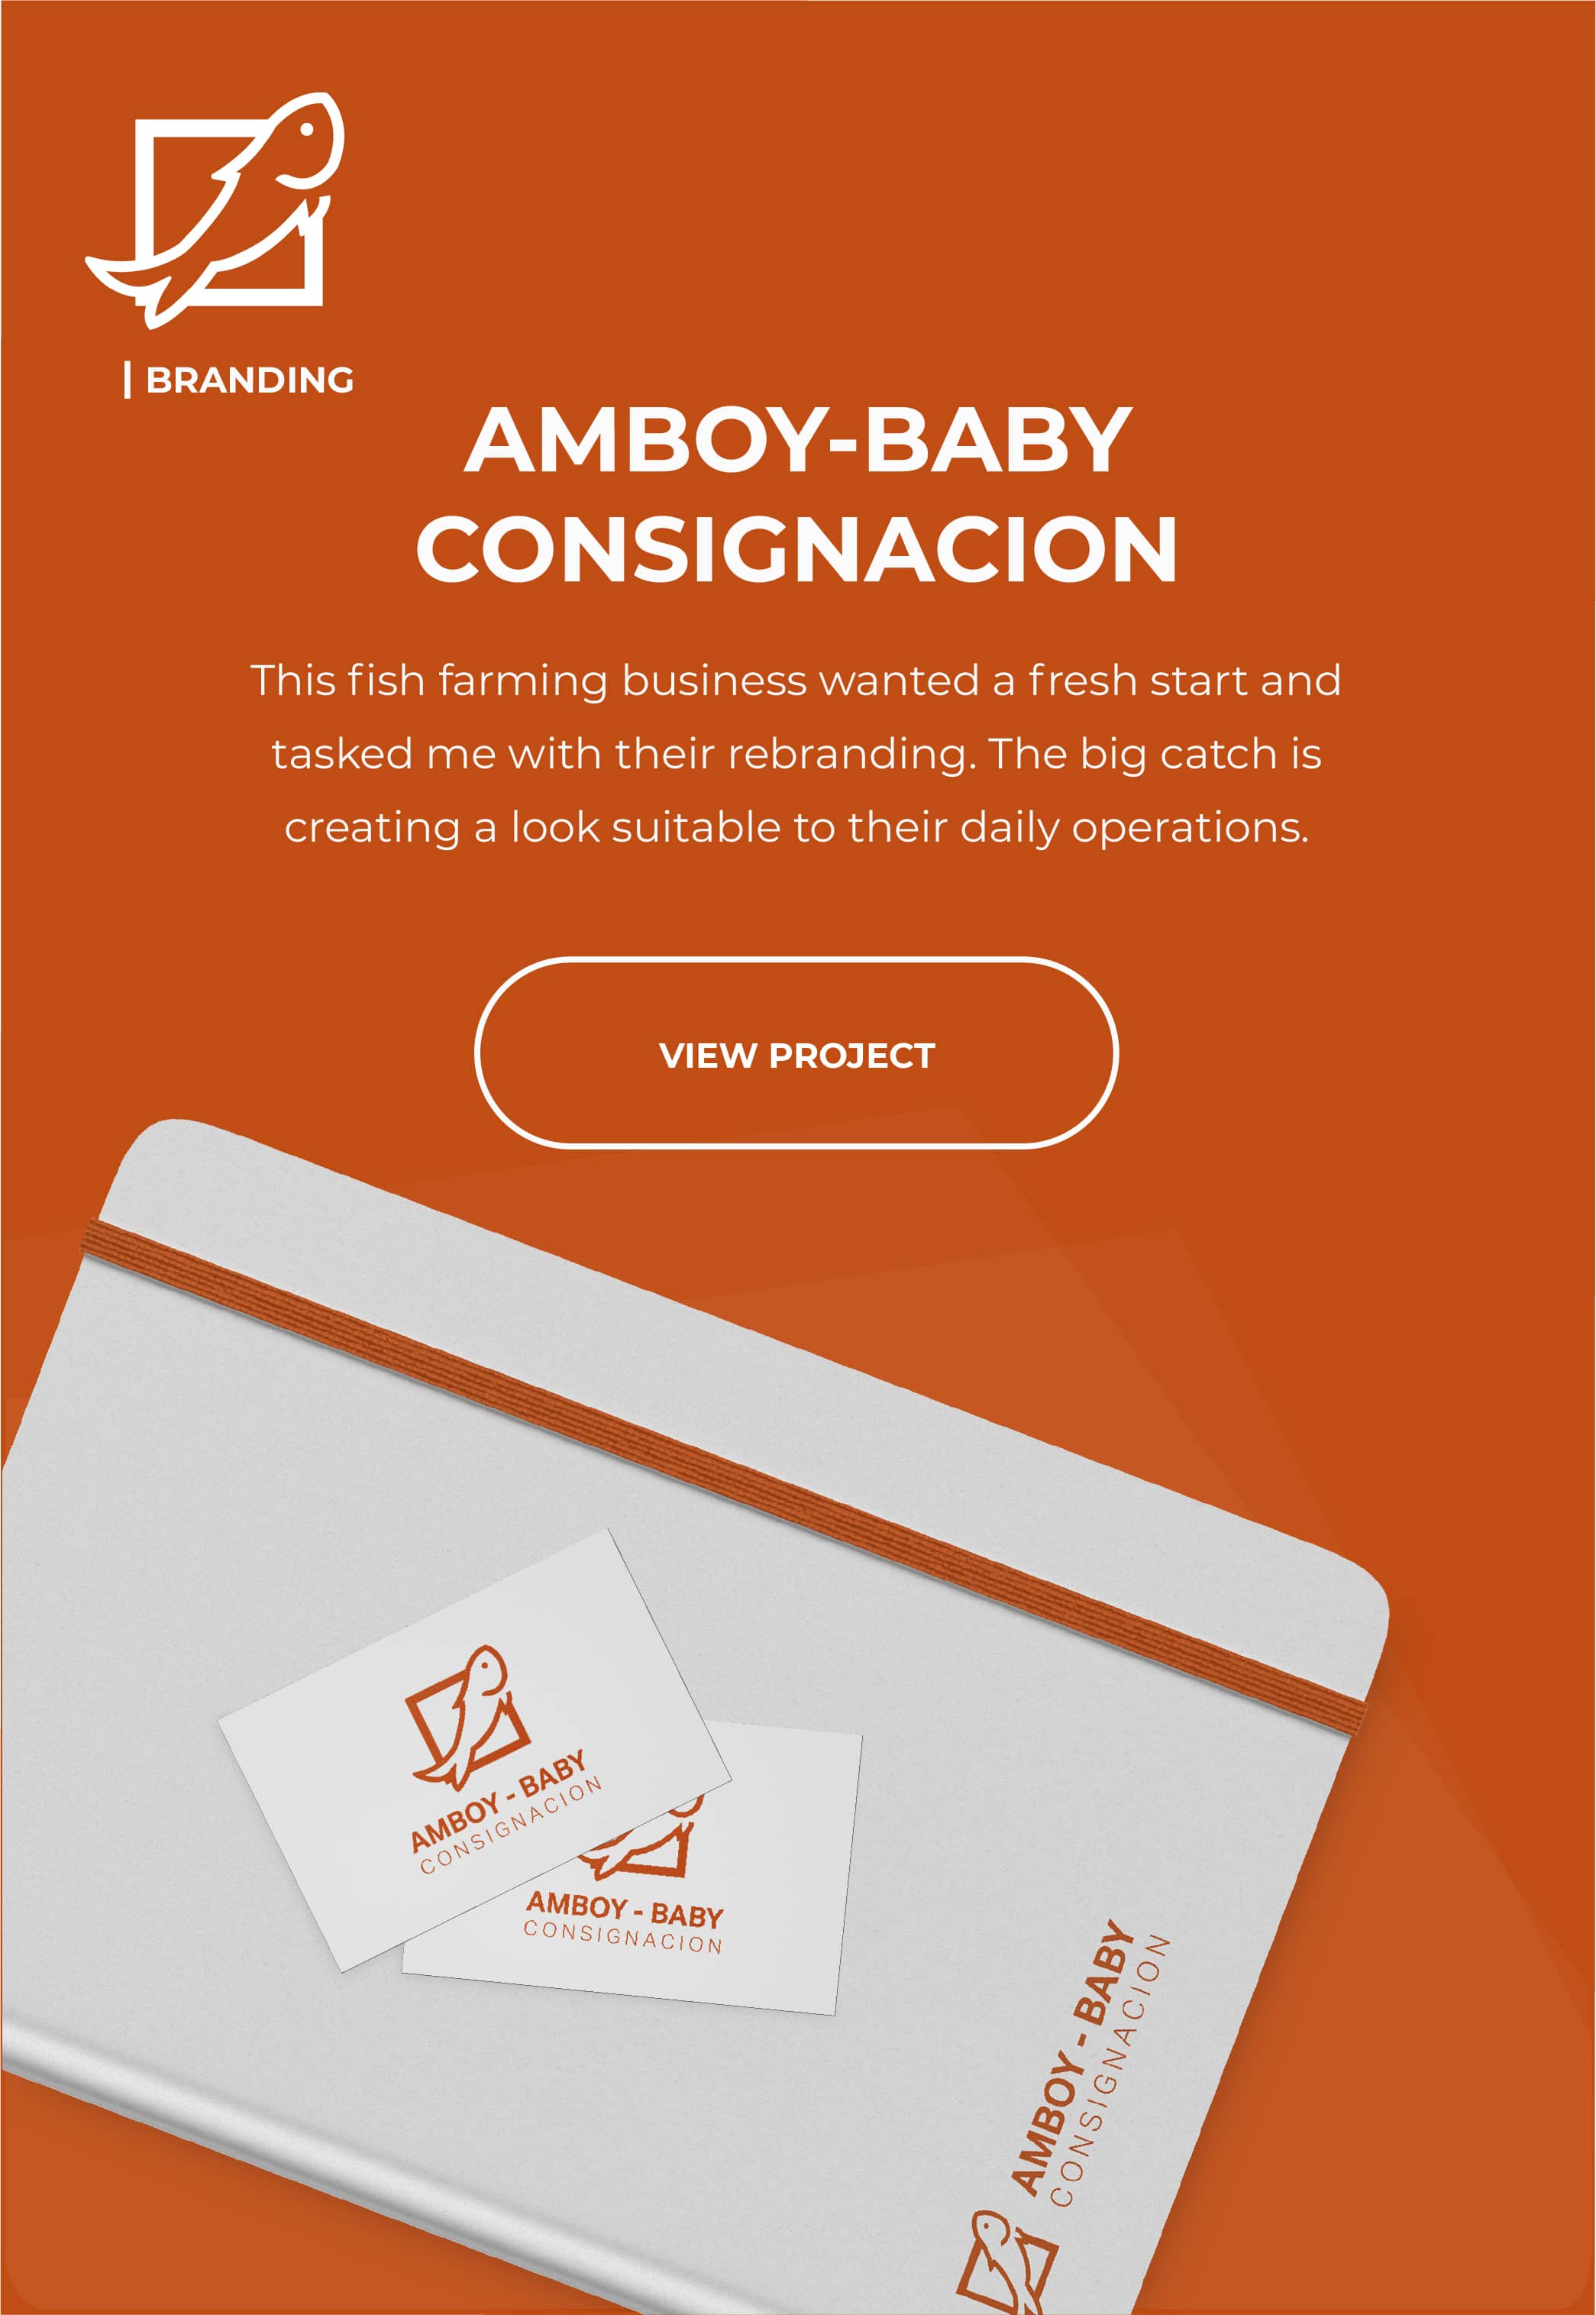 Read about Amboy-Baby Consignacion